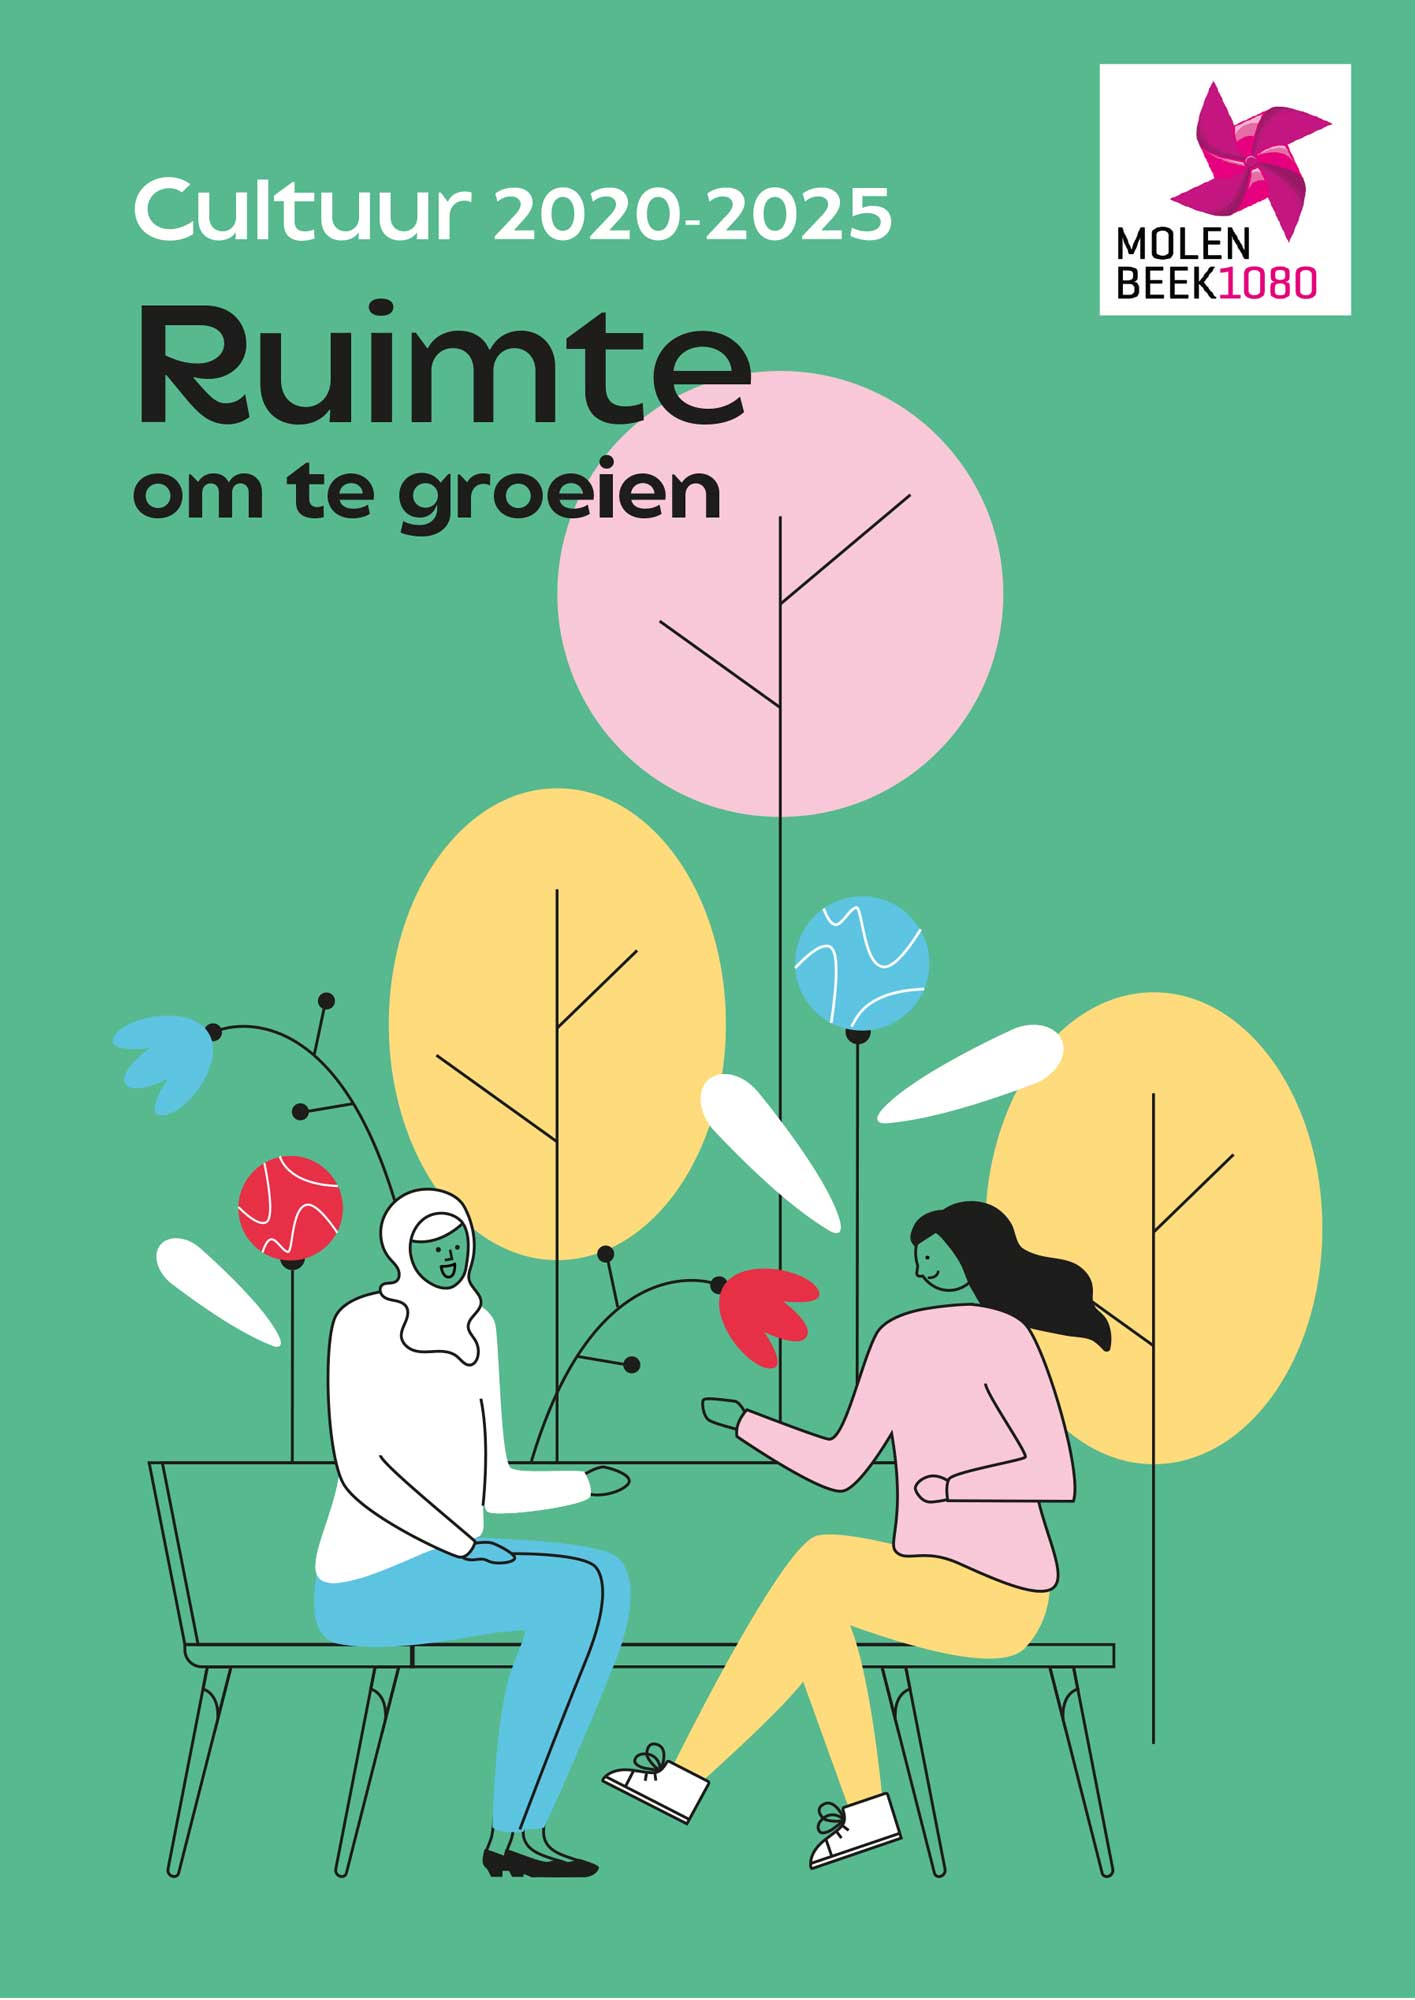 Nederlandstalige cover (groen) voor brochure rond Cultuurbeleid in Molenbeek